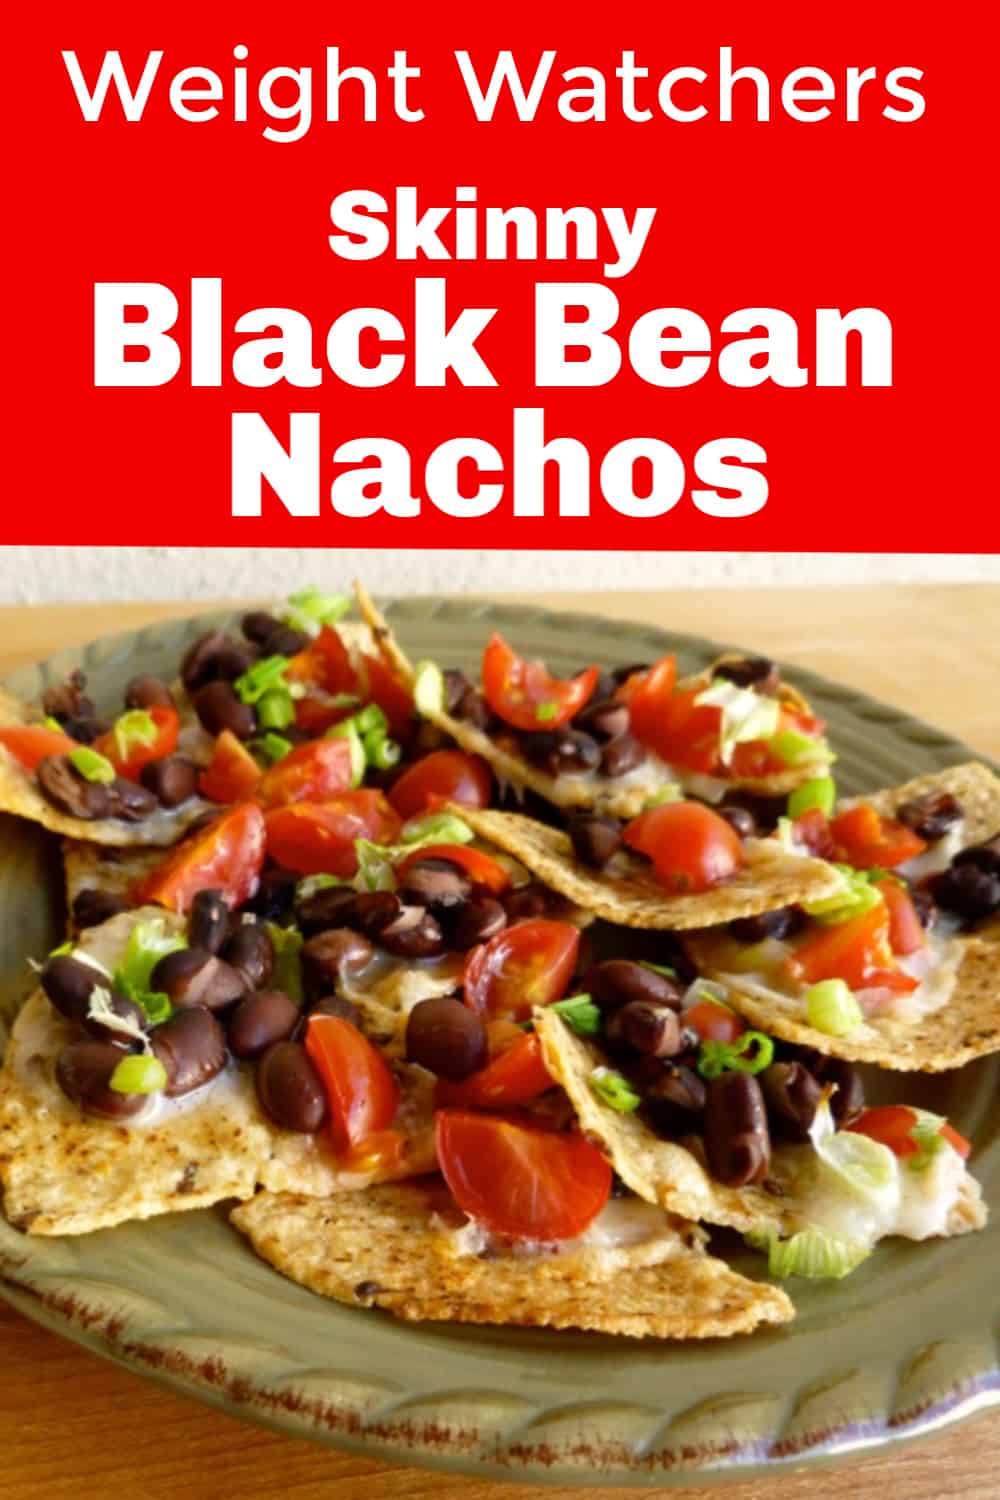 Plate of black bean nachos.